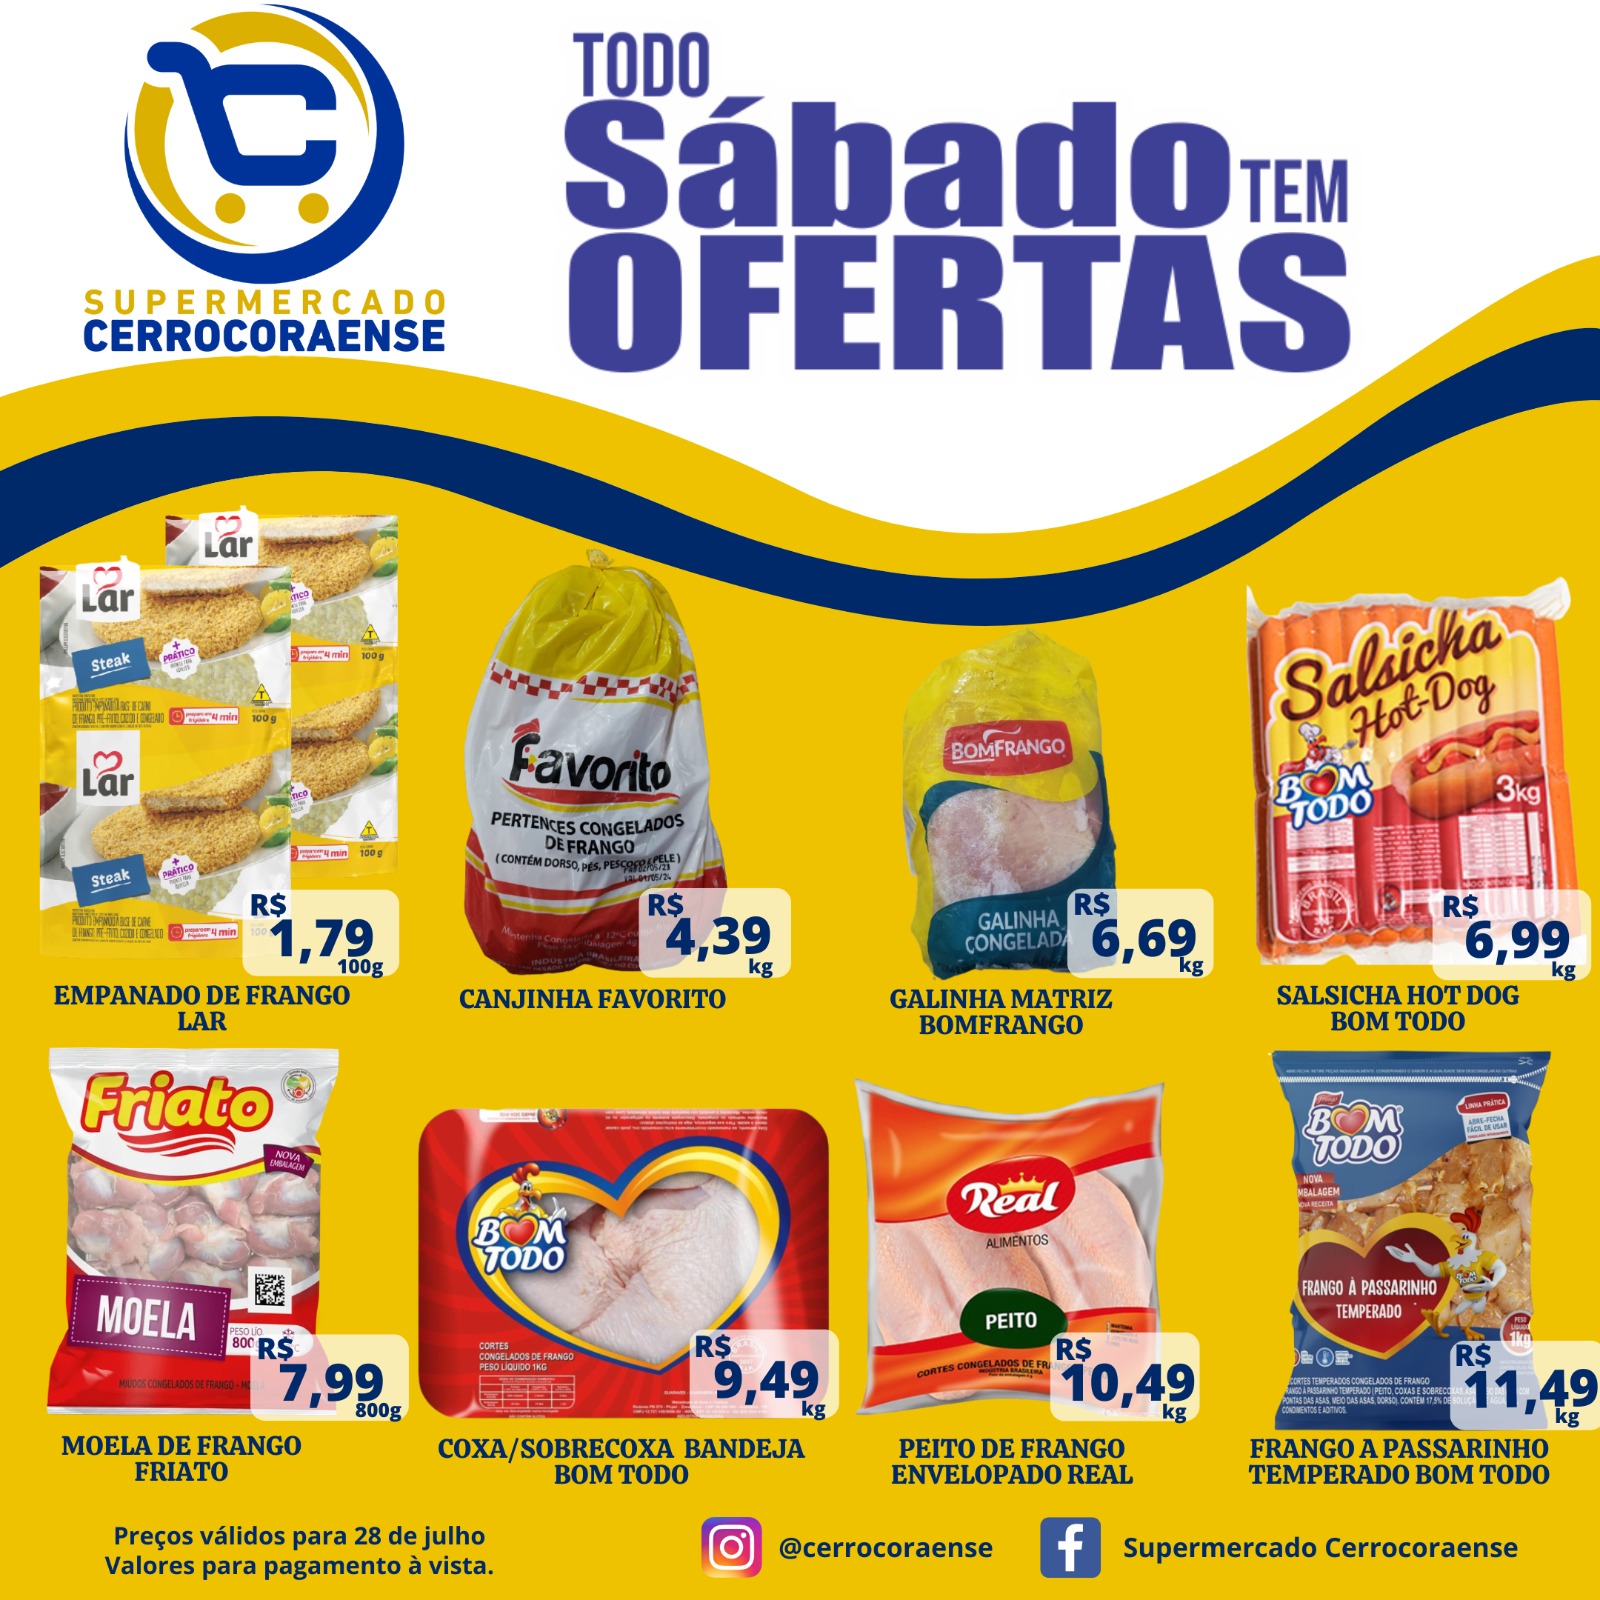 Ofertas do sábado mais esperado no Supermercado Cerrocoraense